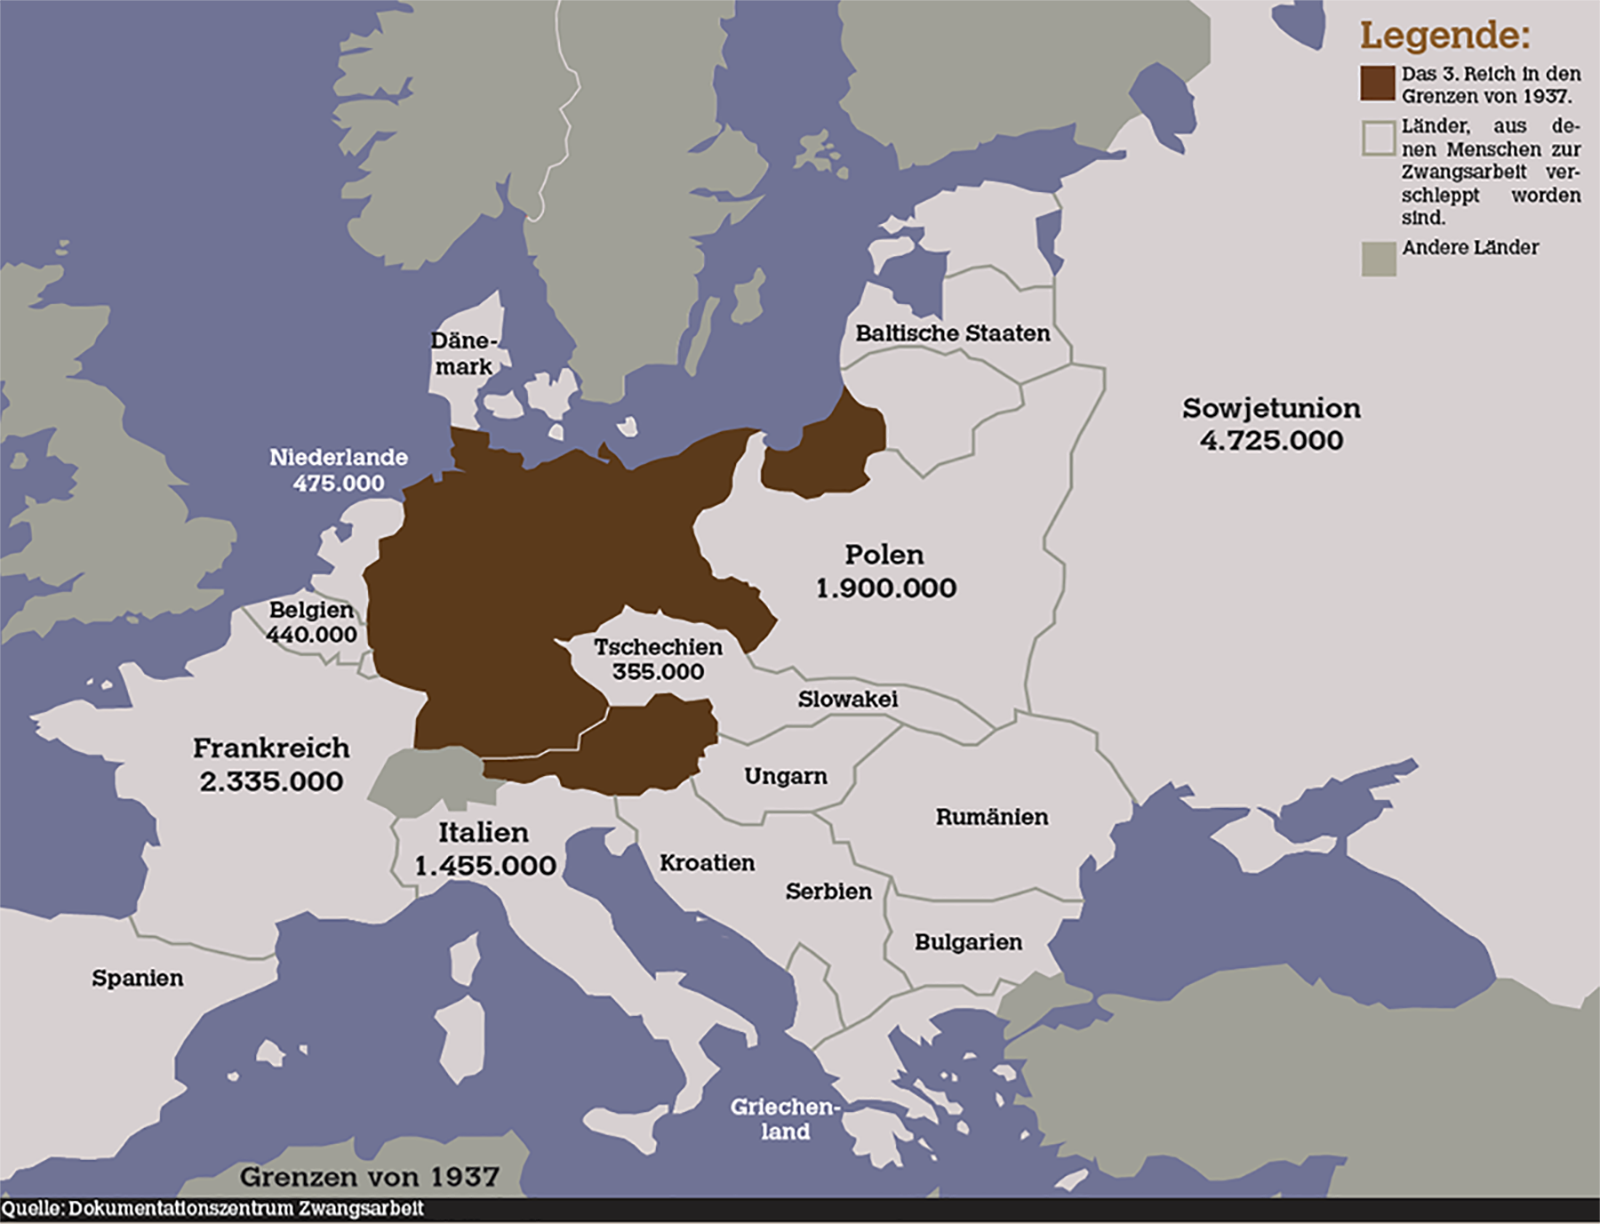 Europakarte mit Herkunftsländer der zivilen Zwangsarbeiter